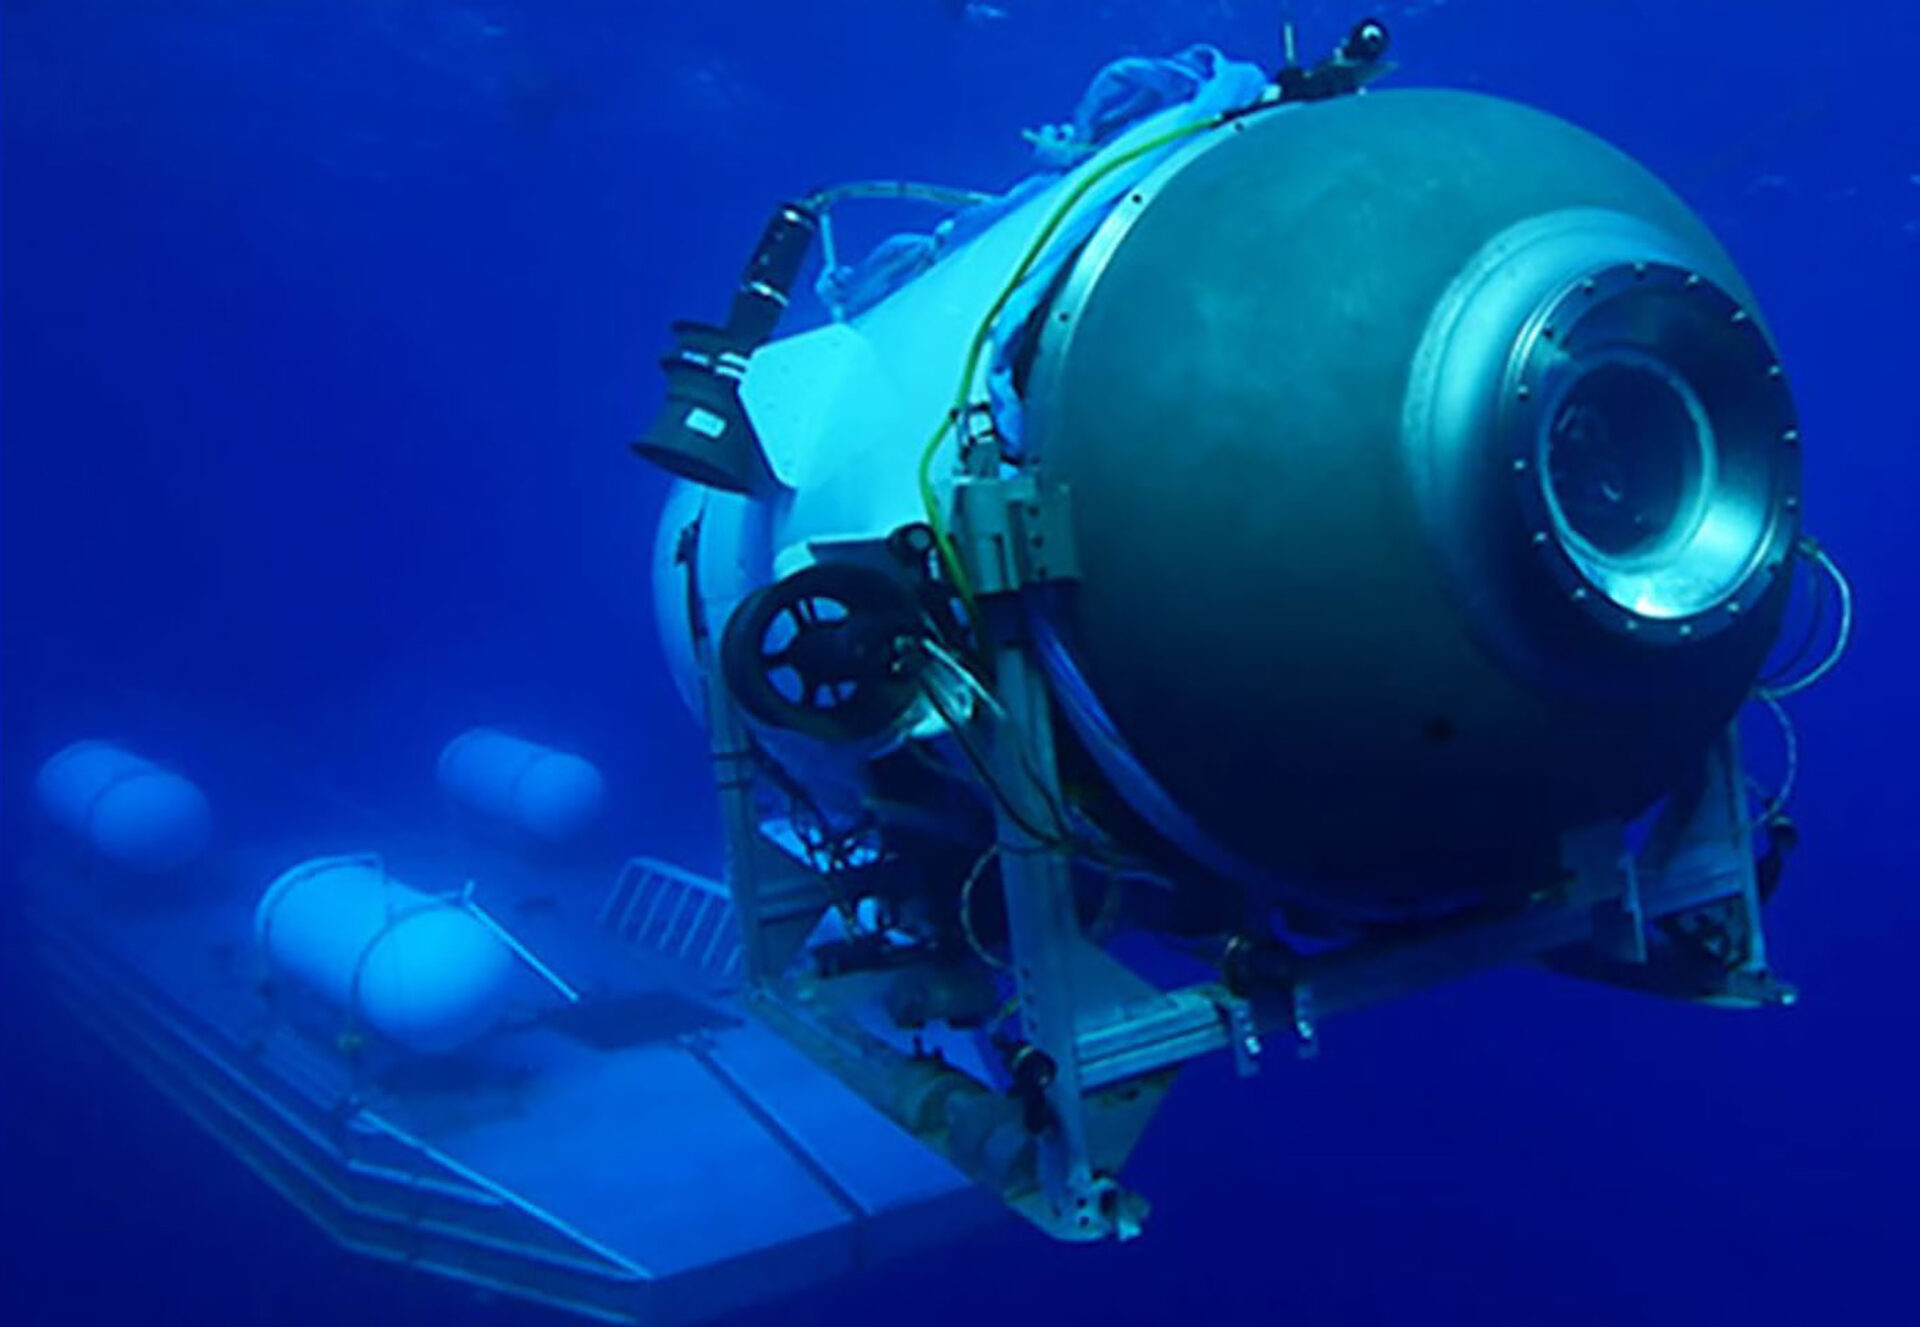 Oxígeno en el submarino Titán posiblemente se agotó; sigue la búsqueda